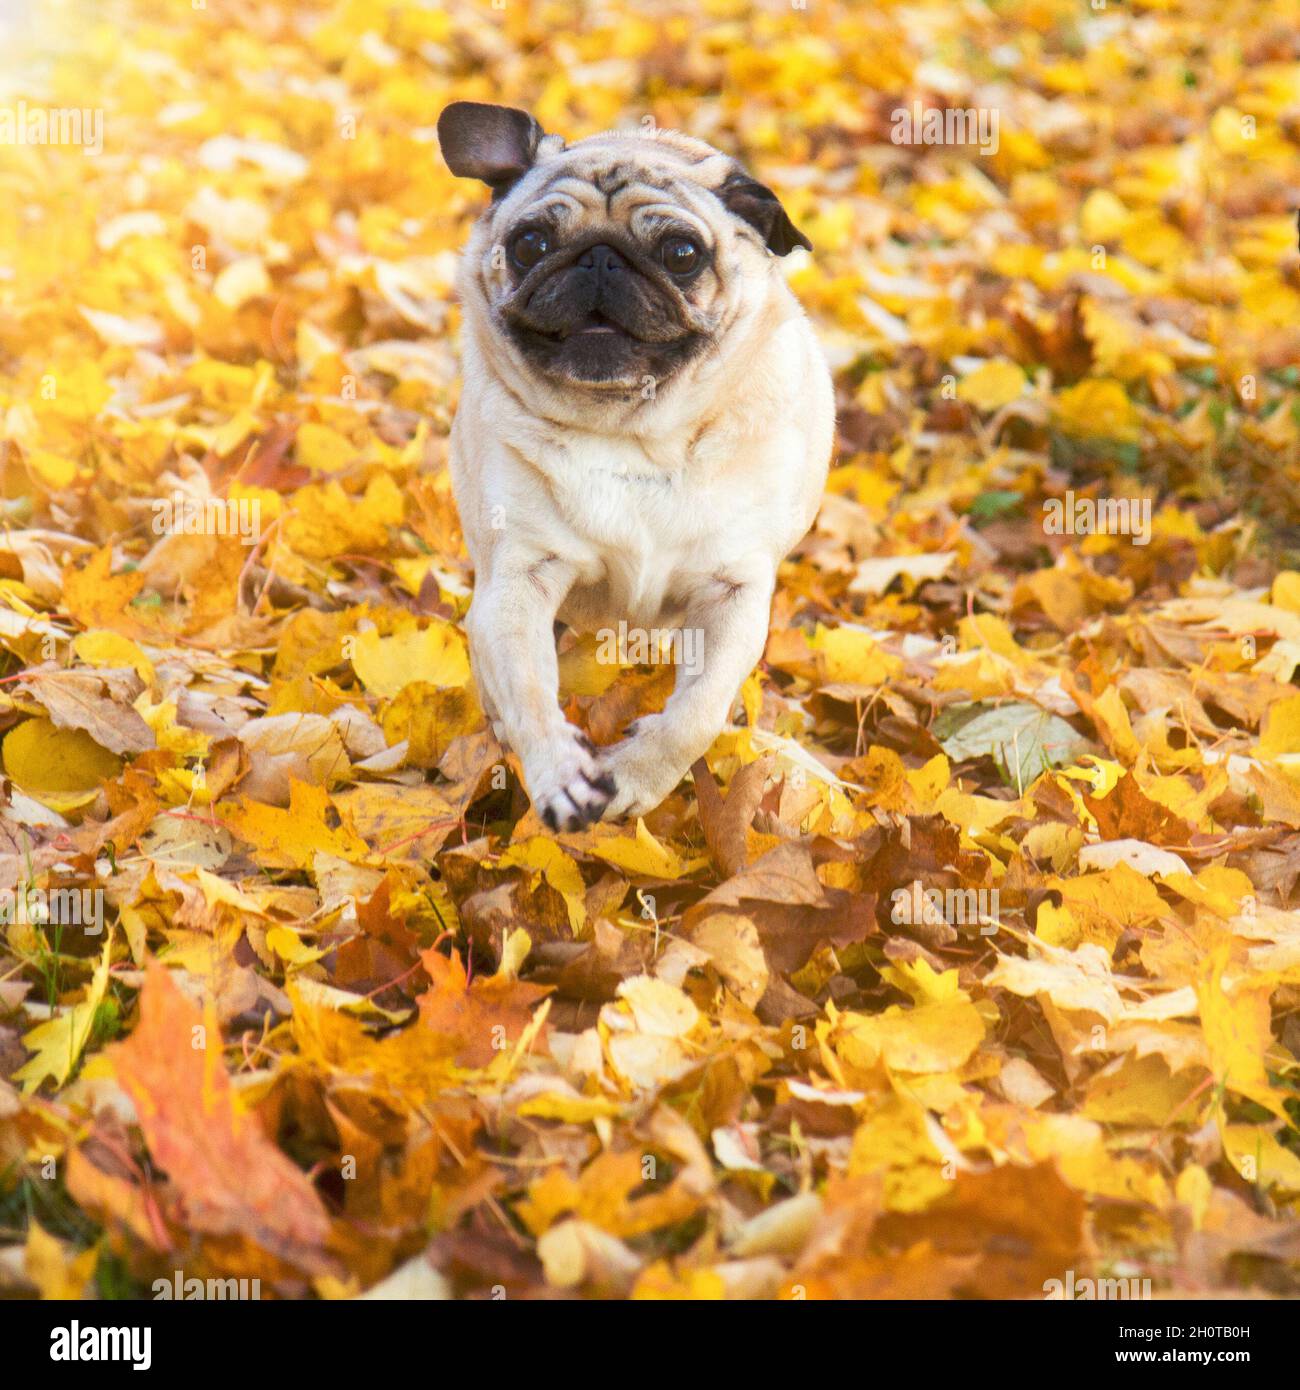 perro pug en el parque de otoño Foto de stock